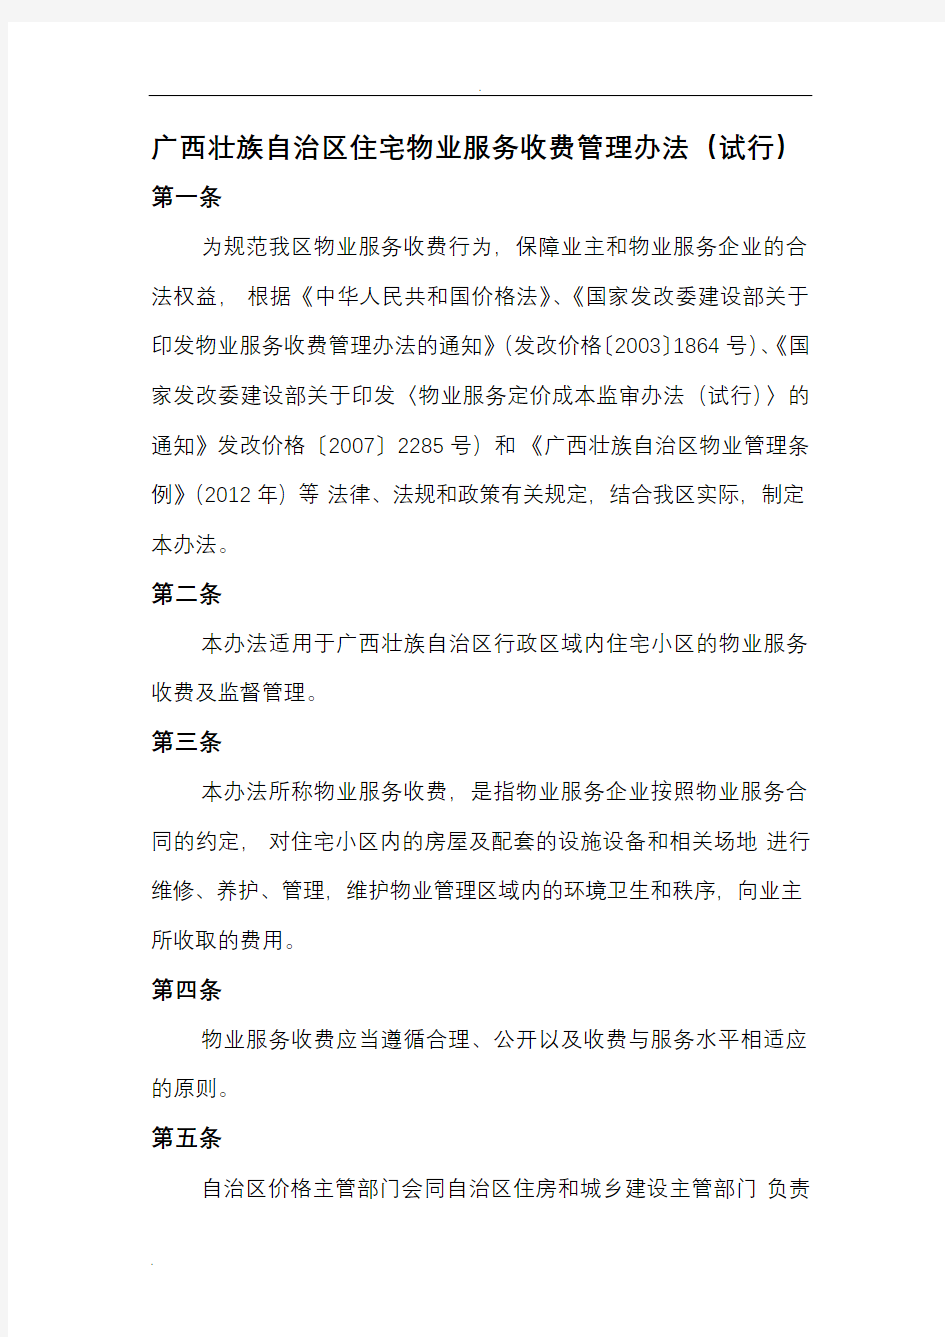 广西壮族自治区住宅物业服务收费管理办法(试行)